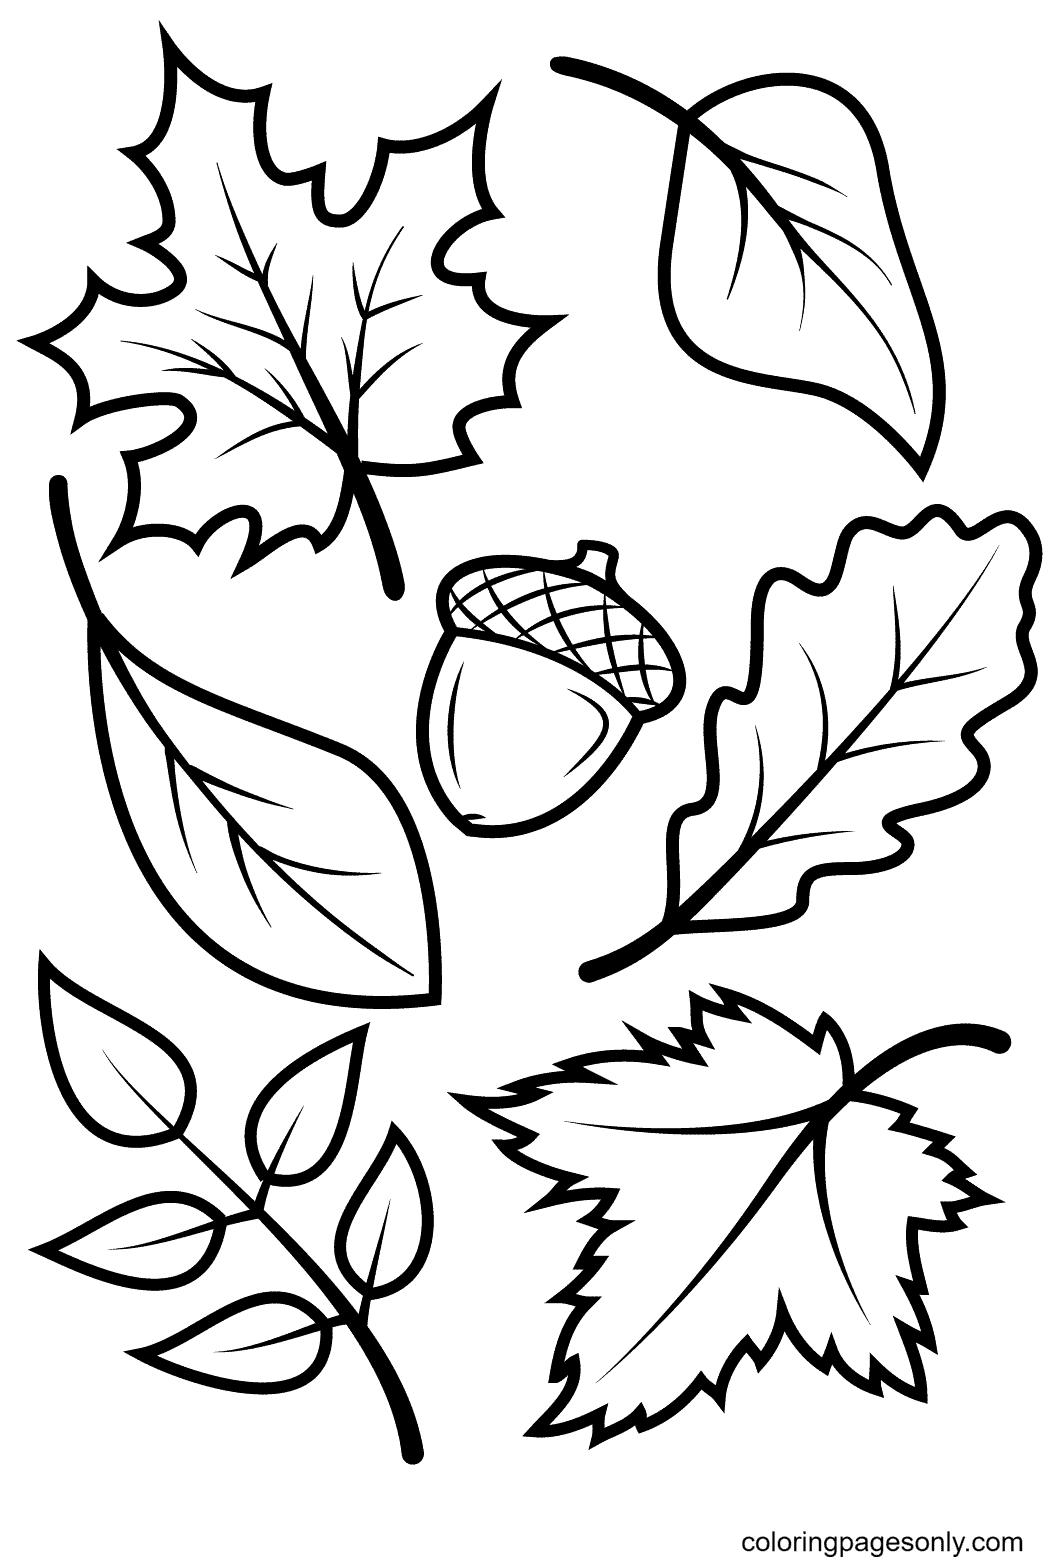 Herbstblätter und Eichel aus Herbstblättern